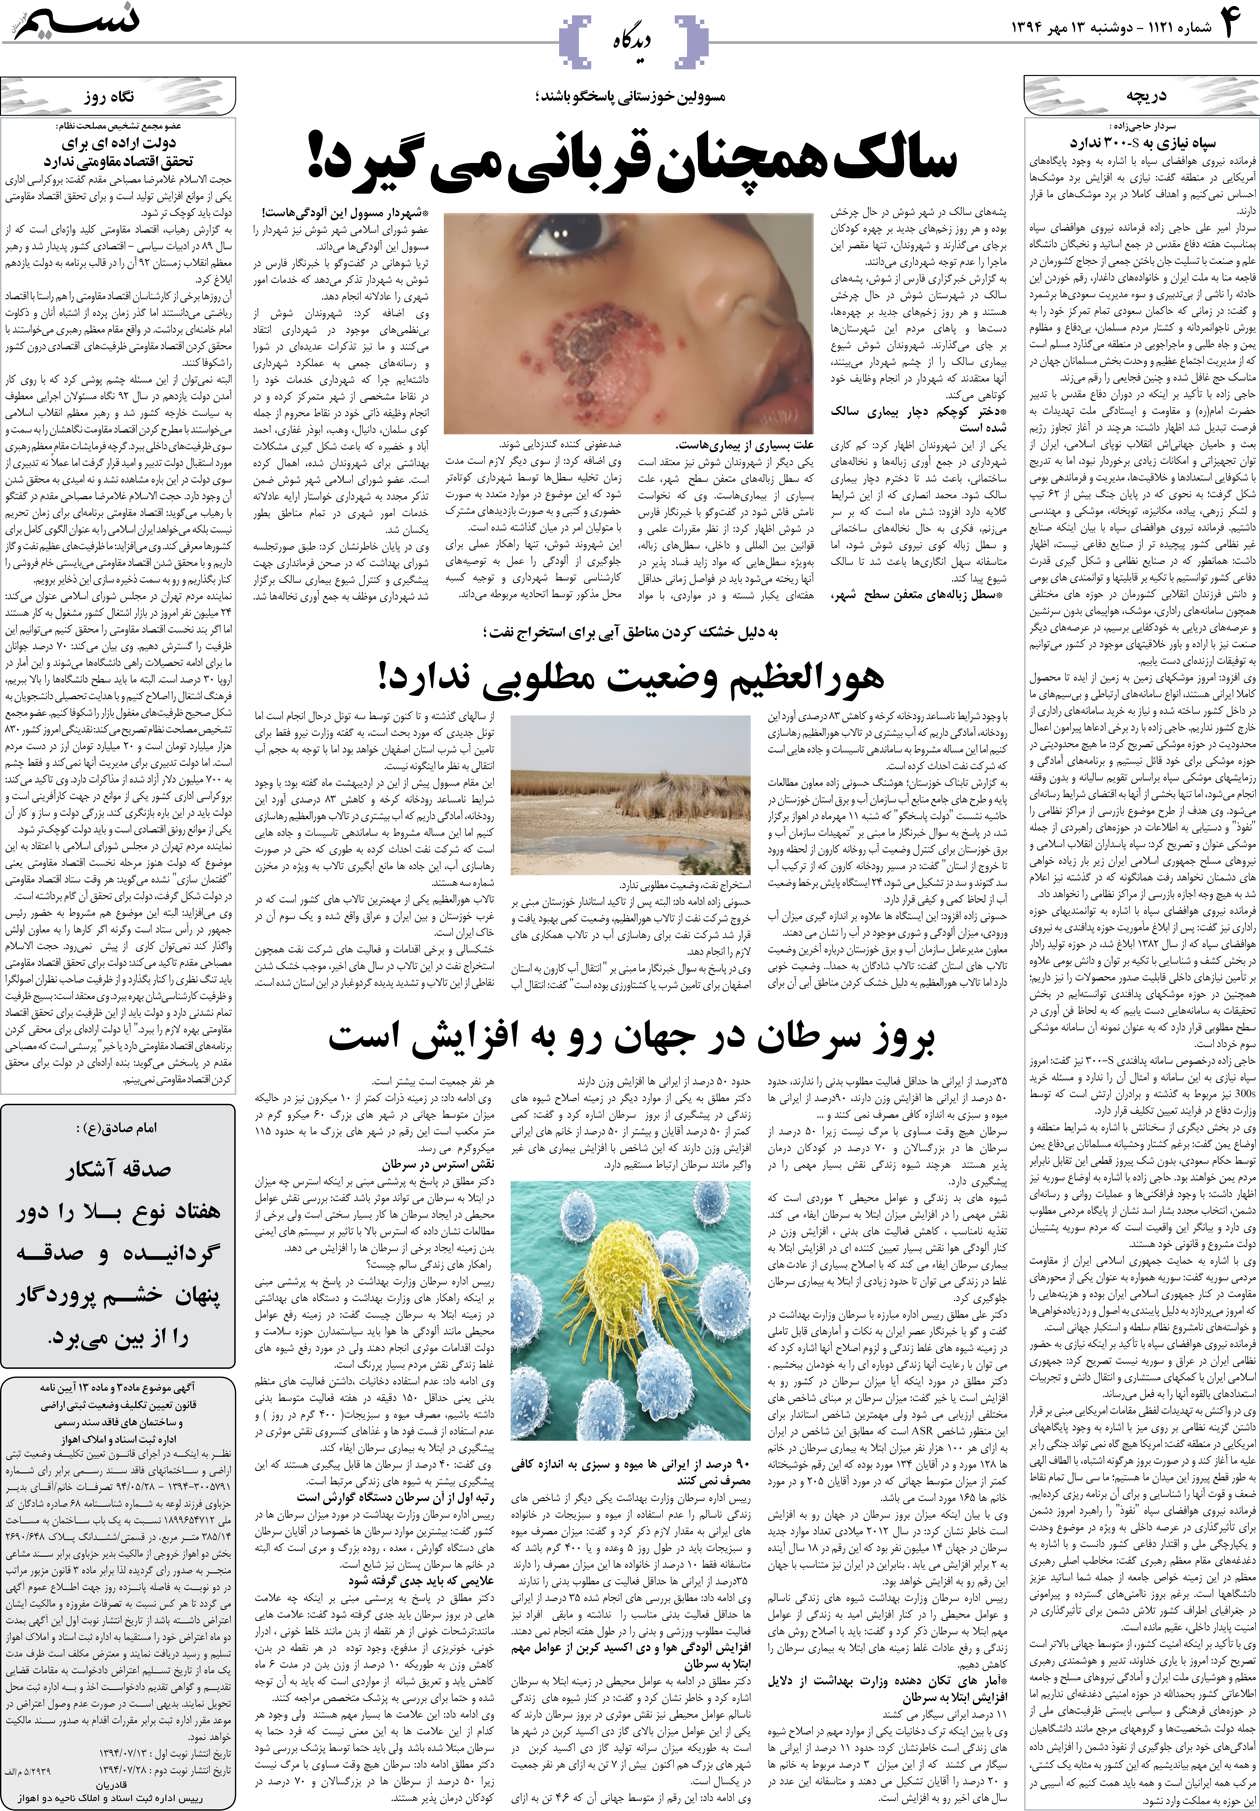 صفحه دیدگاه روزنامه نسیم شماره 1121